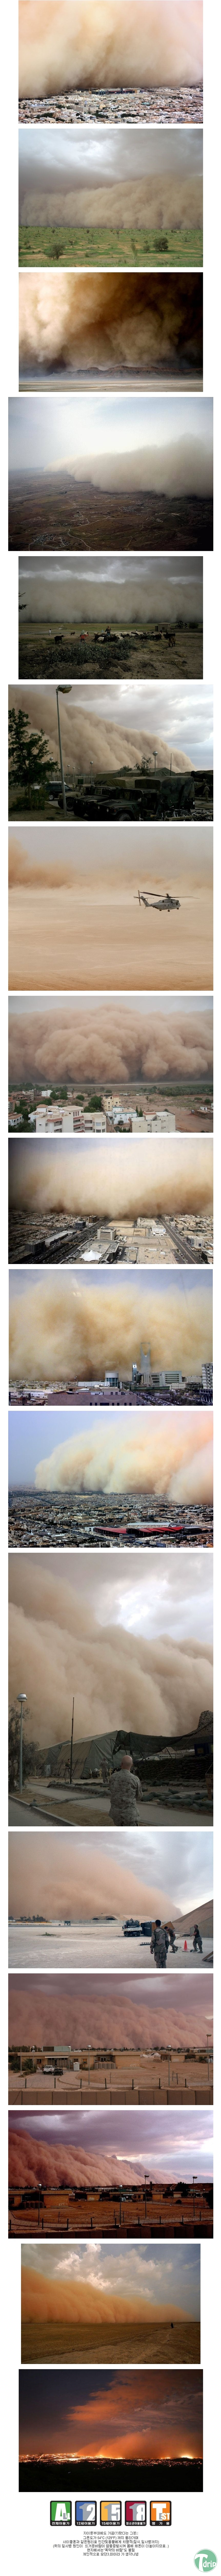 1 (3).jpg : 사막의 모래폭풍.jpg